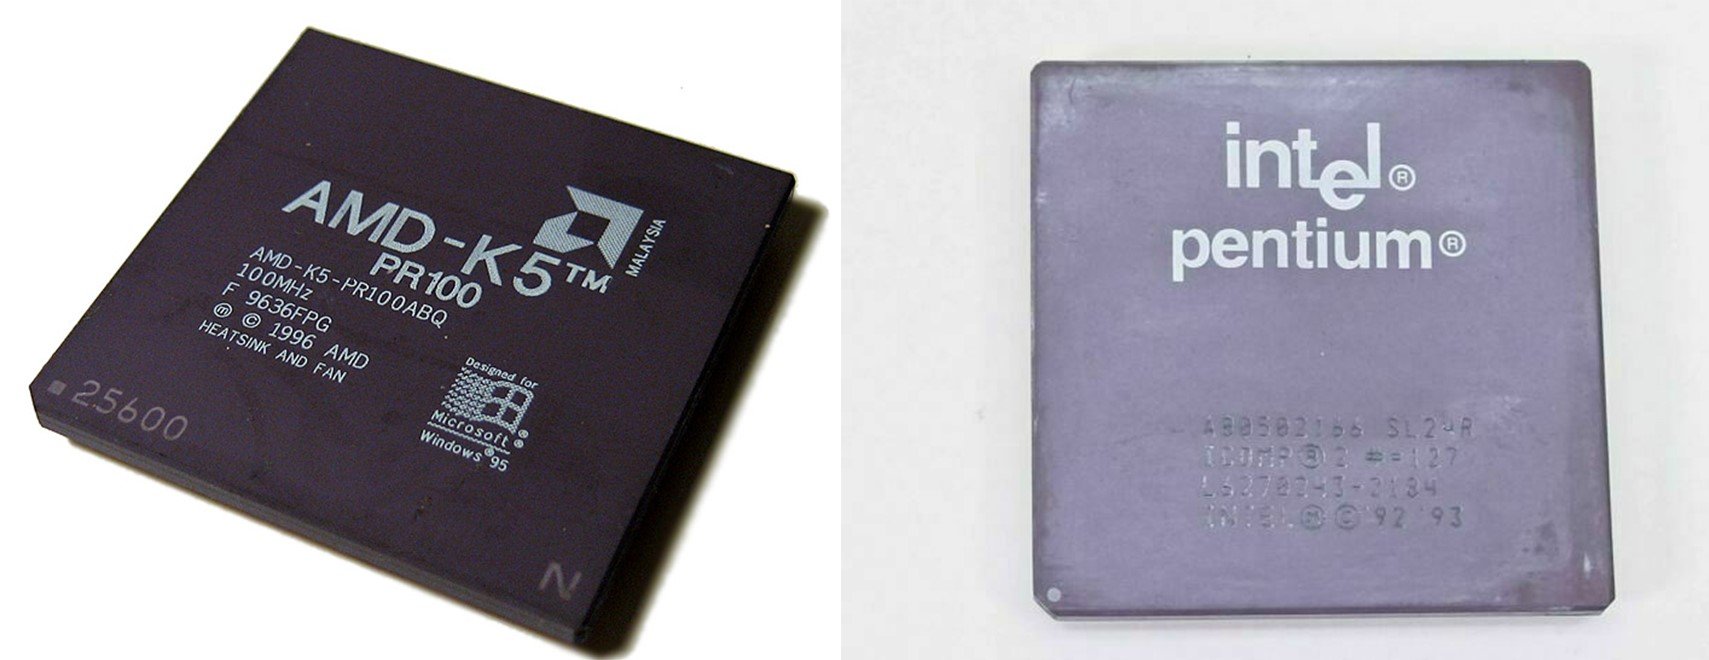 AMD K5 & Intel Pentium